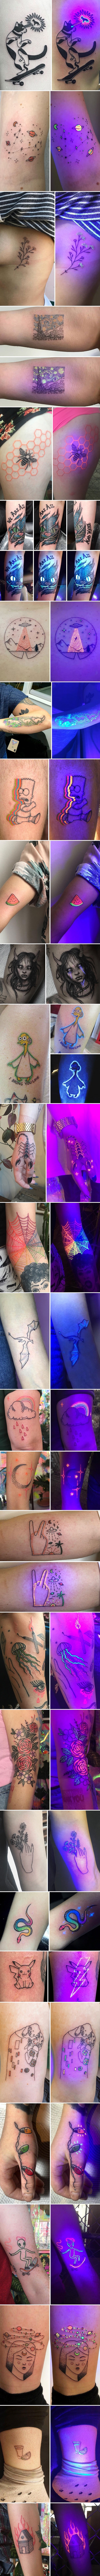 28 zanimljivih UV tetovaža koje pod posebnim svjetlom izgledaju tisuću puta bolje